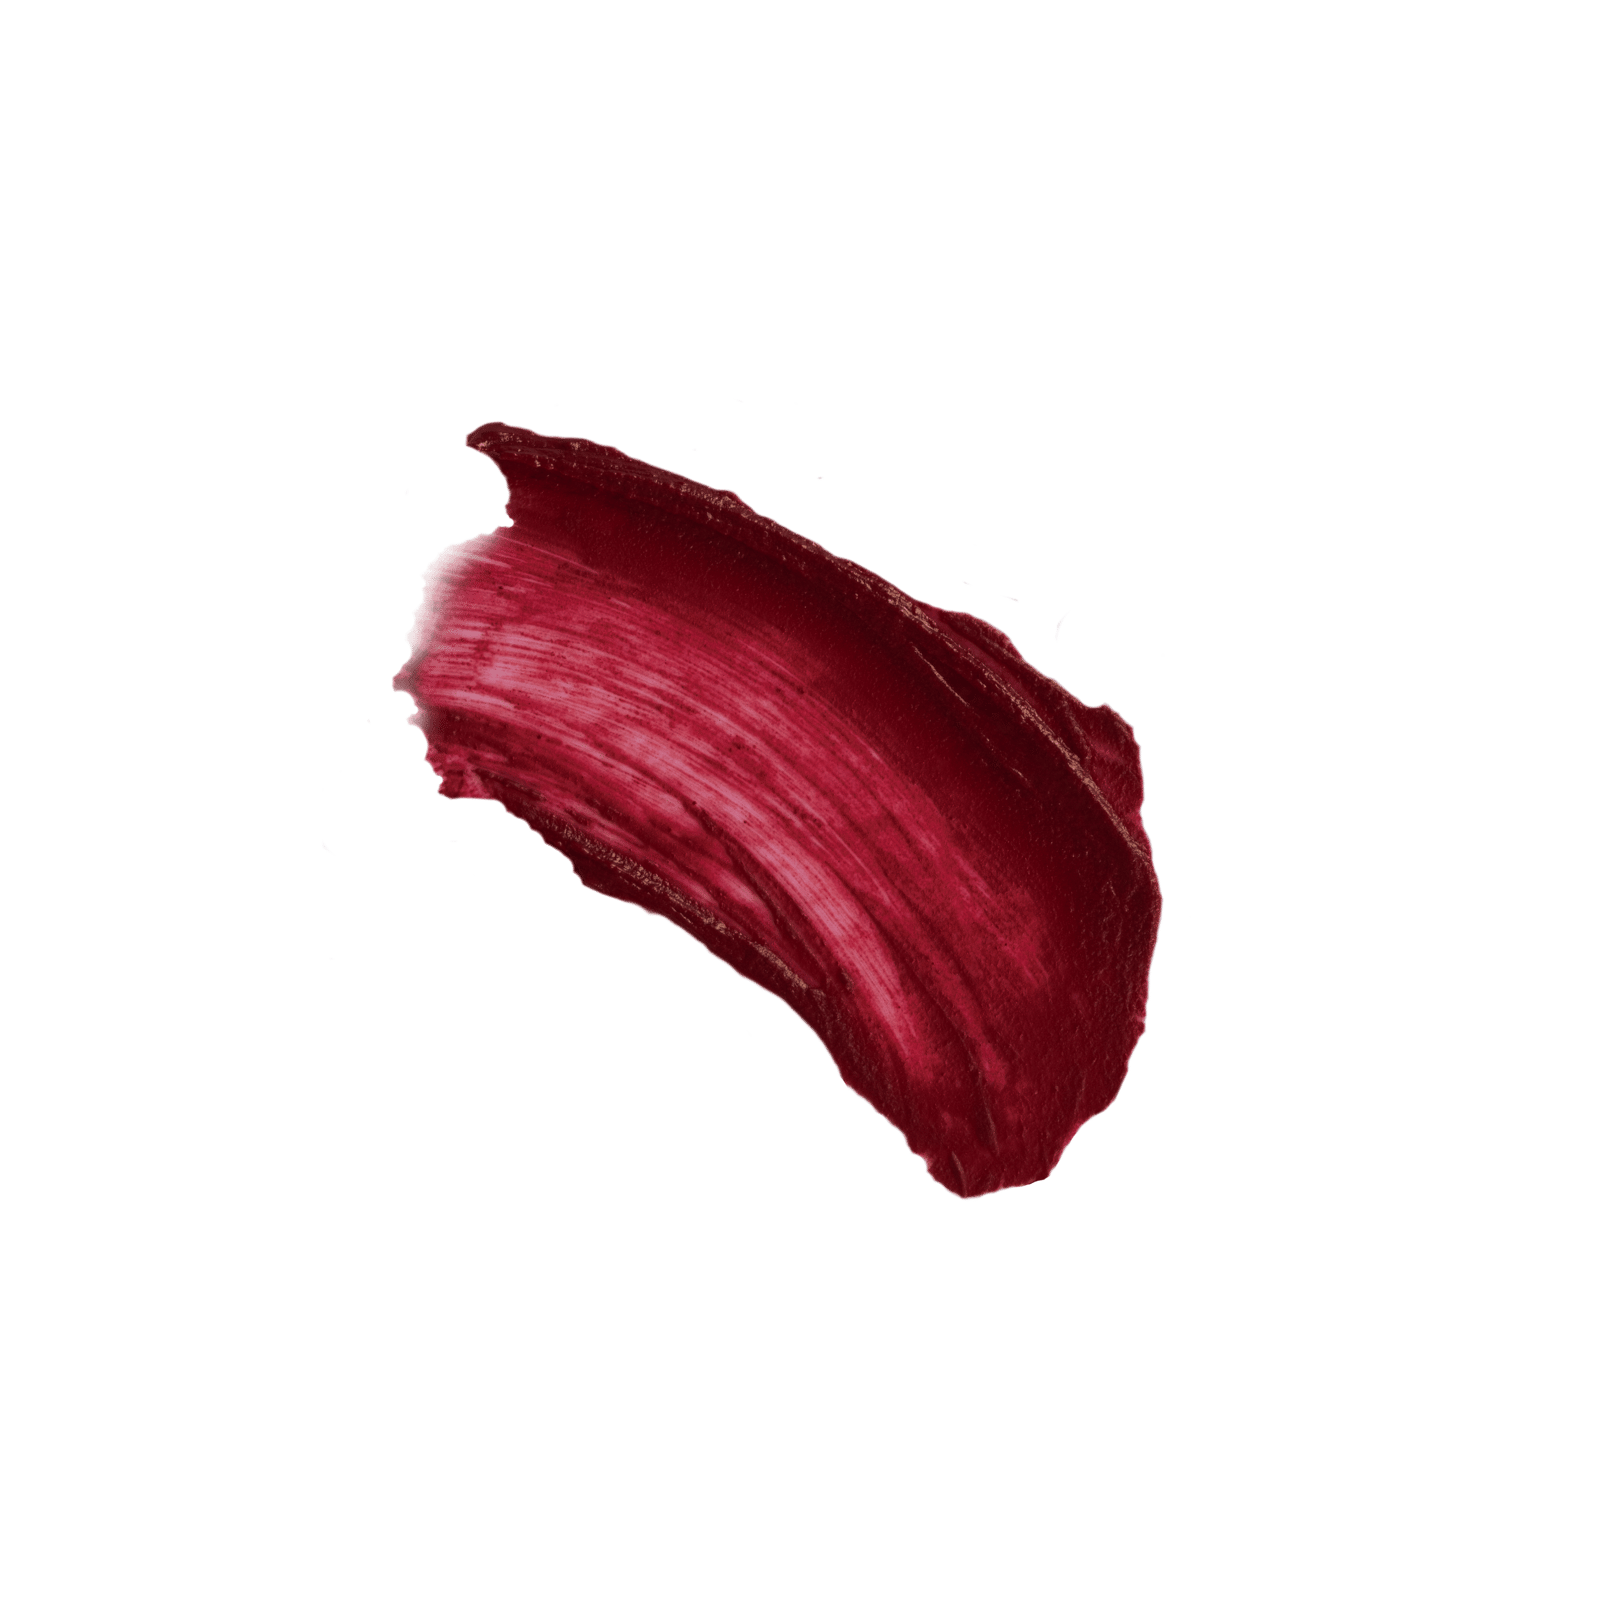 IDUN Minerals Lip Crayon Jenny Vinröd 2,5 g